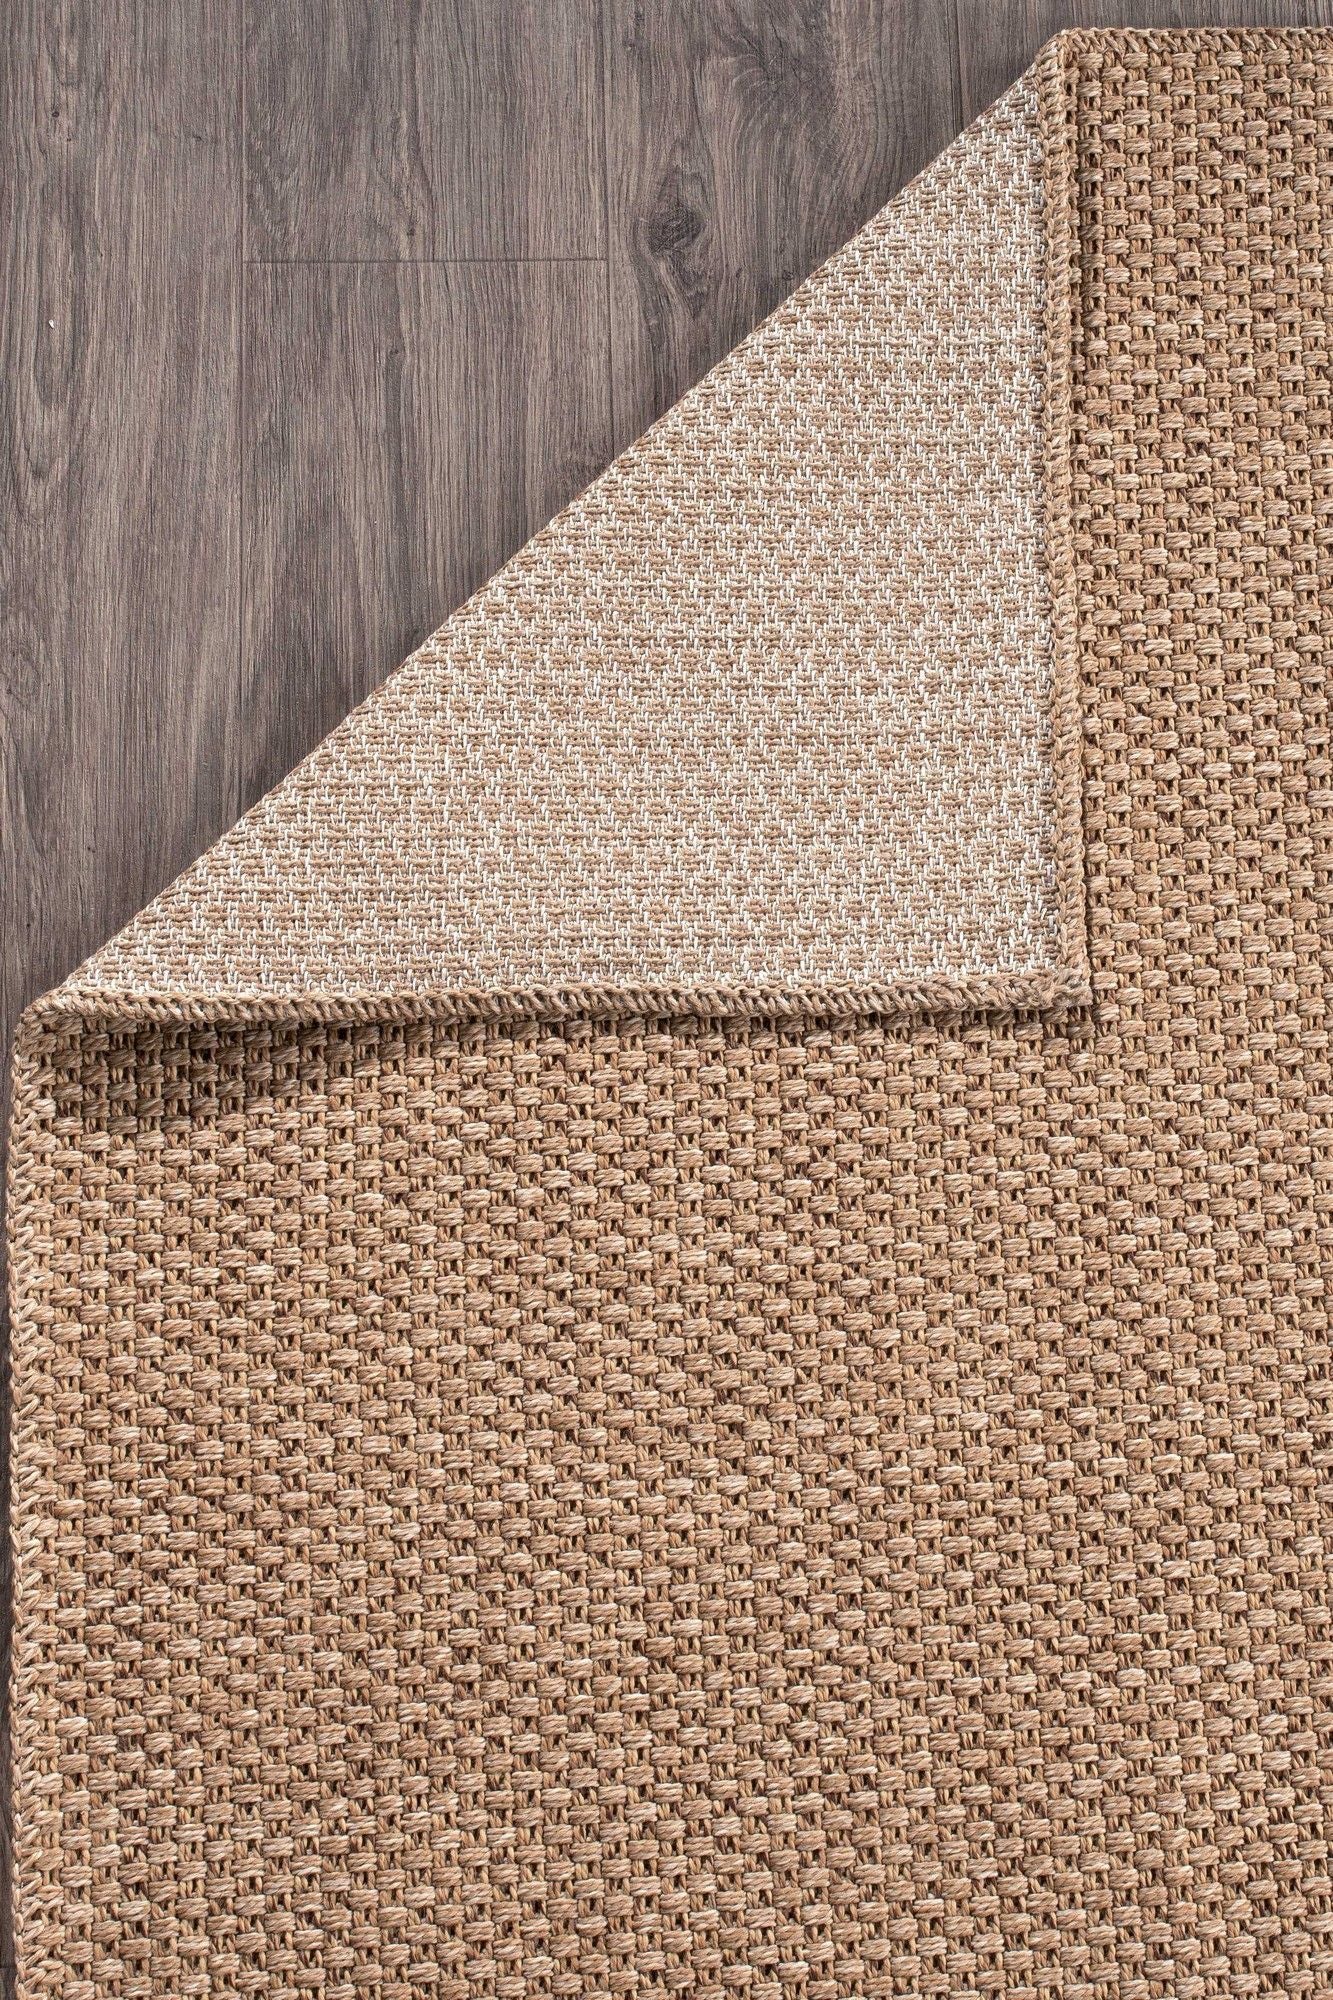 Rusticana 3101 - Hall Carpet (200 x 300)